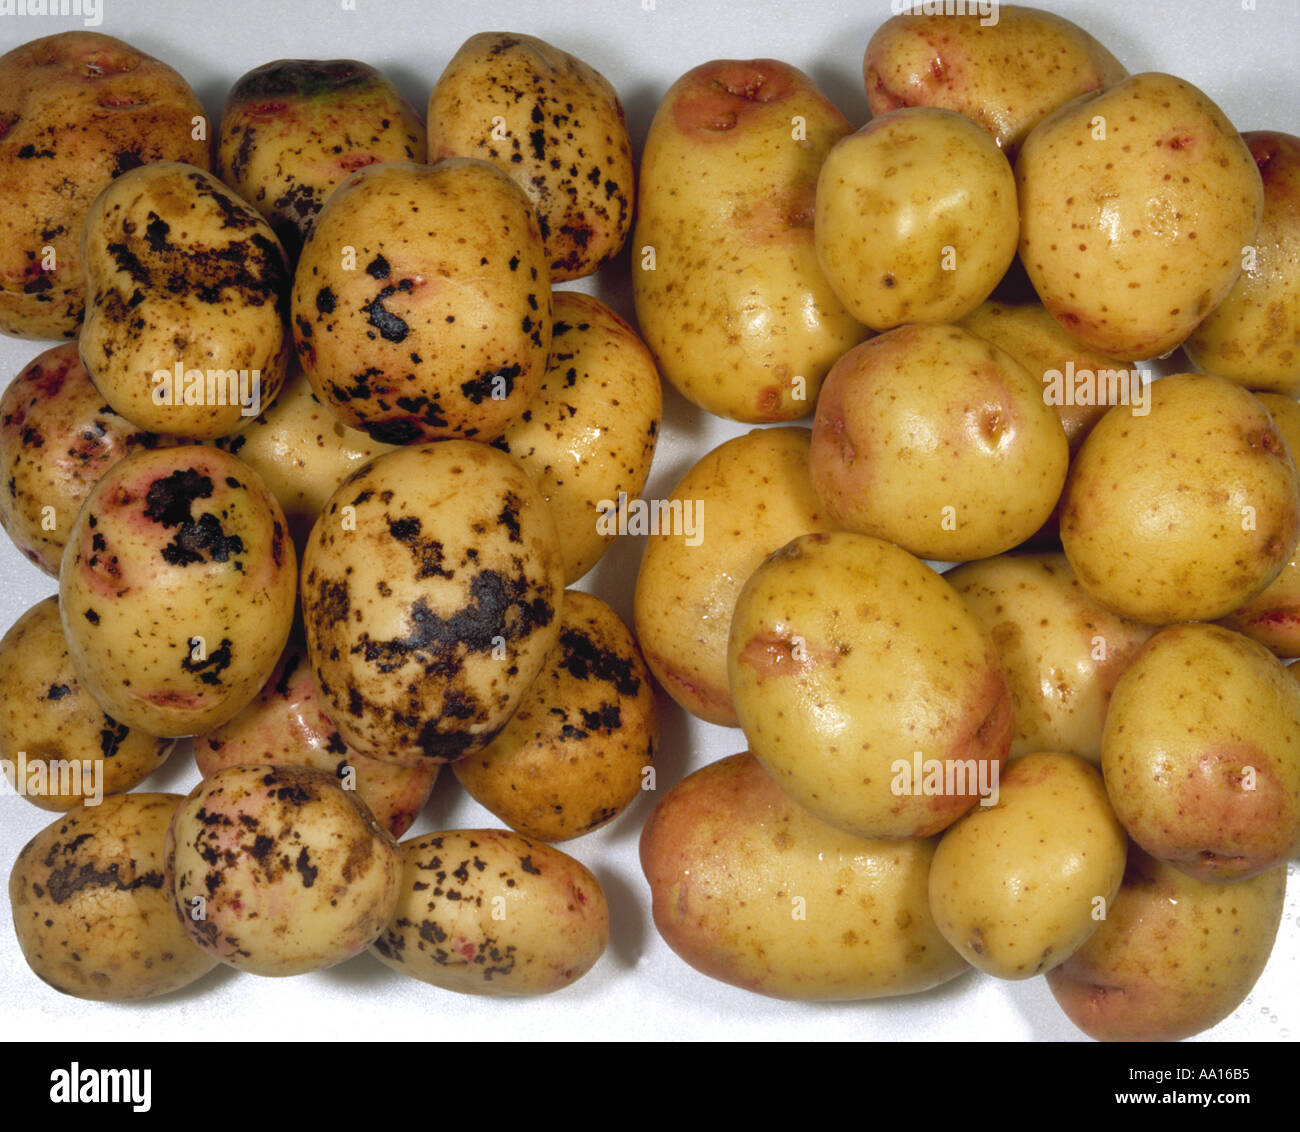 schwarzer Schorf Rhizoctonia Solani auf Kartoffeln im Vergleich zu gesunden nicht infizierten Pflanzen auf der rechten Seite Stockfoto